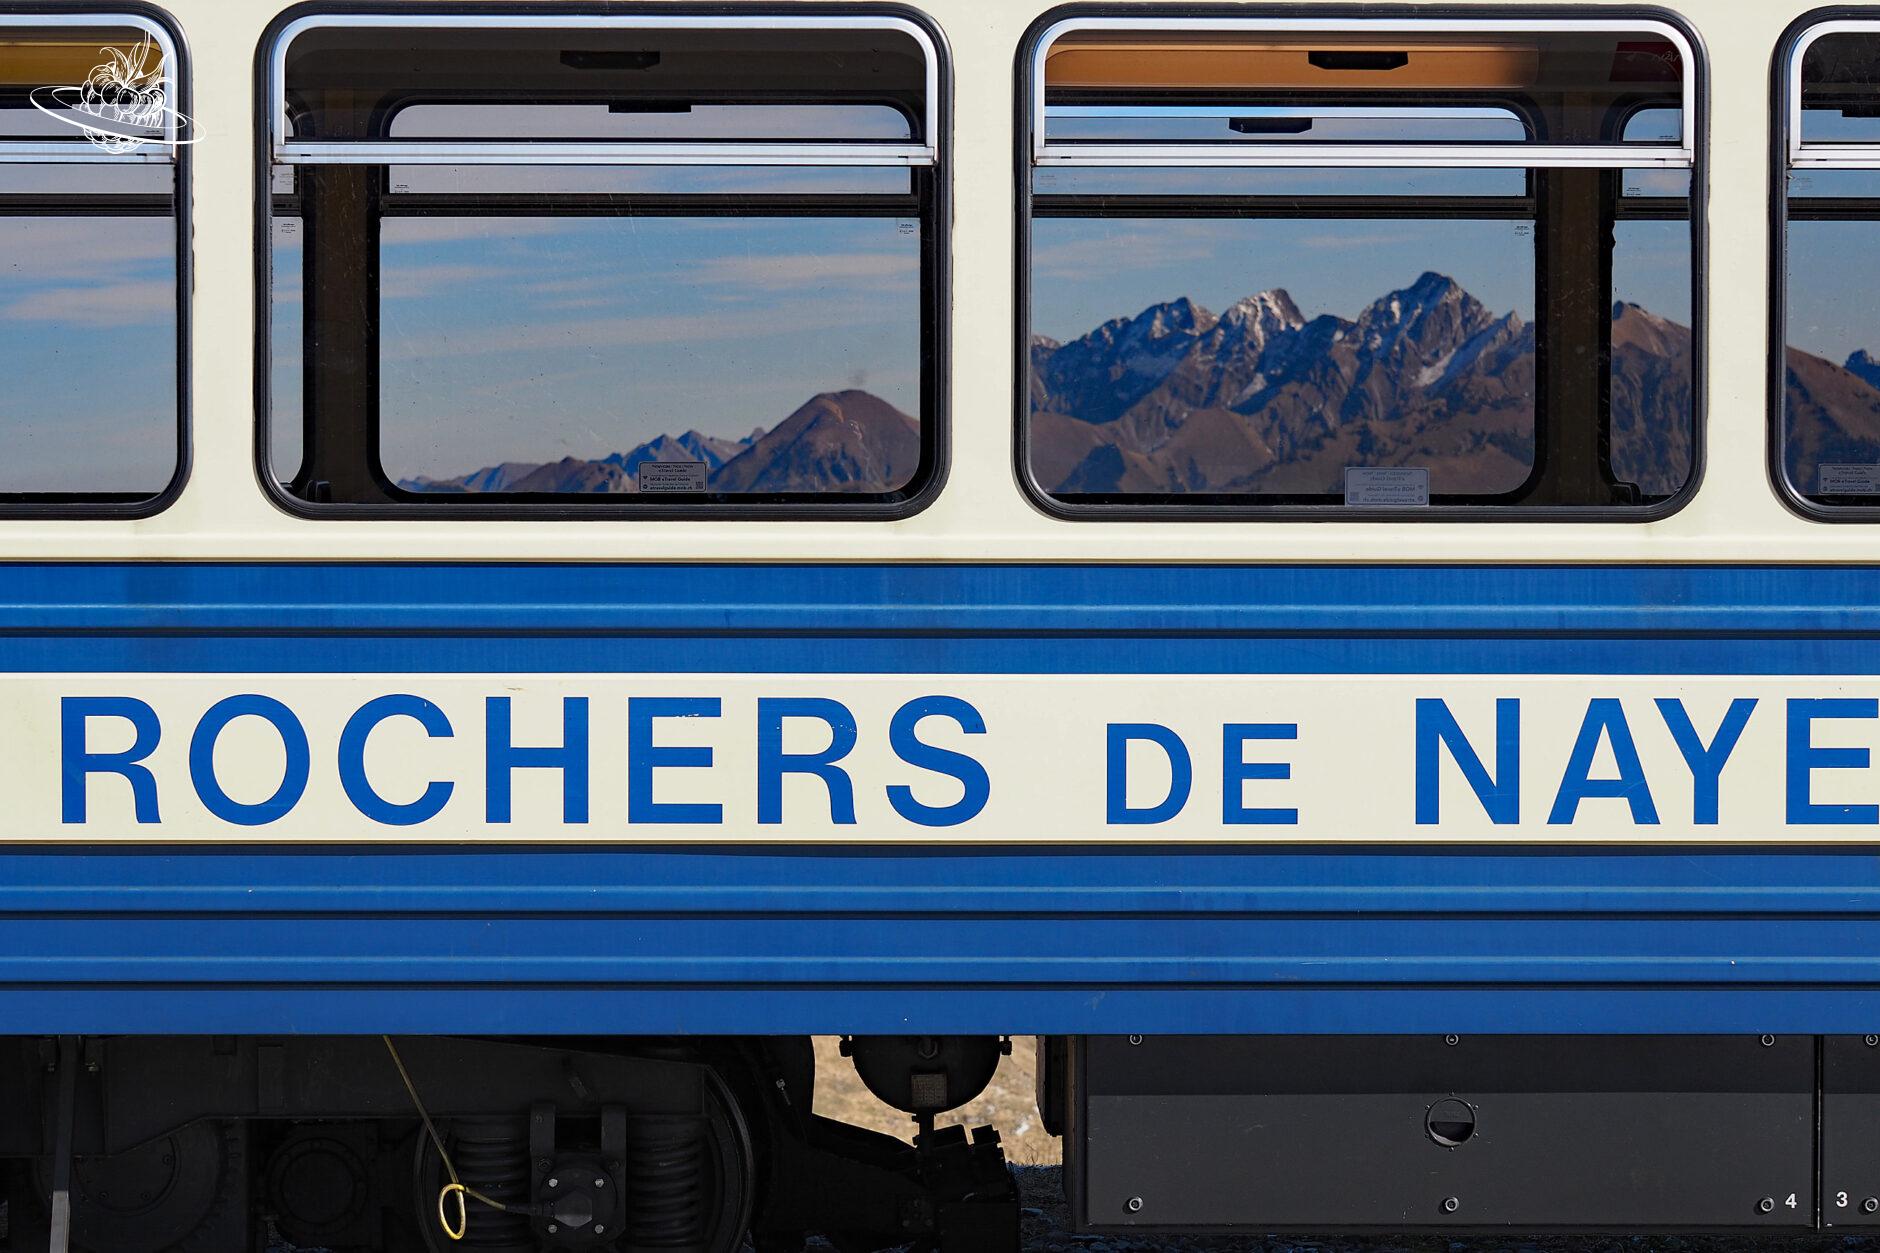 Eisenbahn Rochers de Naye und durch das Fenster sieht man die Bergkette